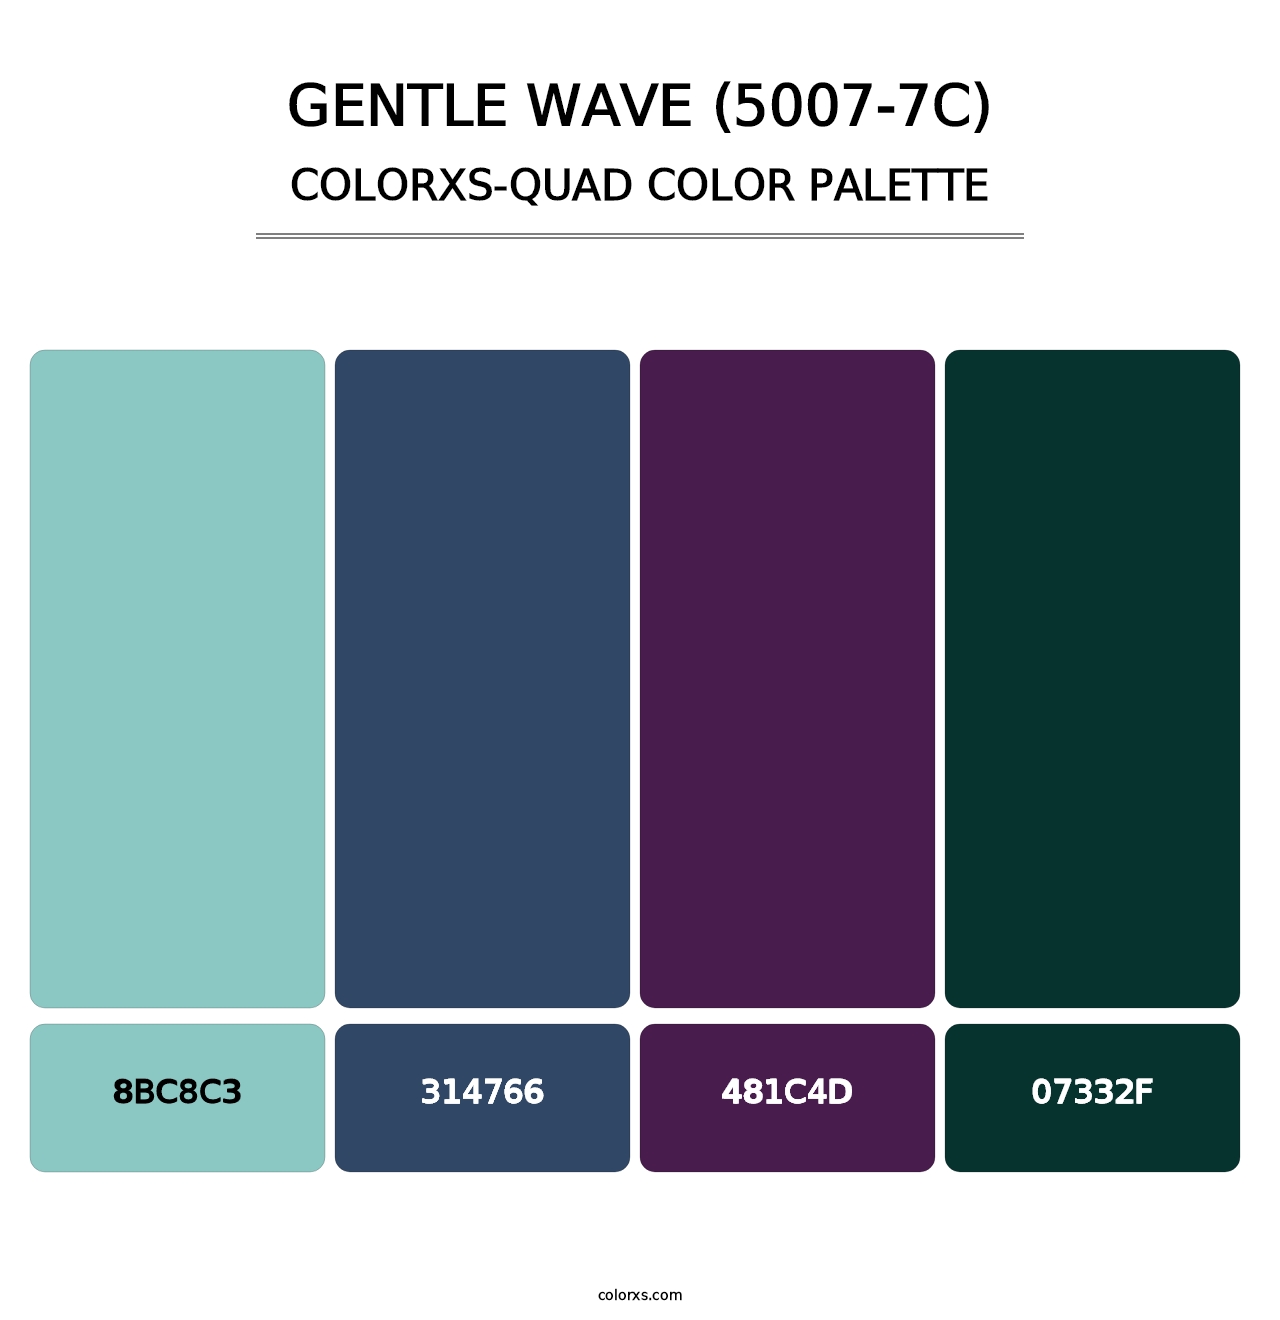 Gentle Wave (5007-7C) - Colorxs Quad Palette